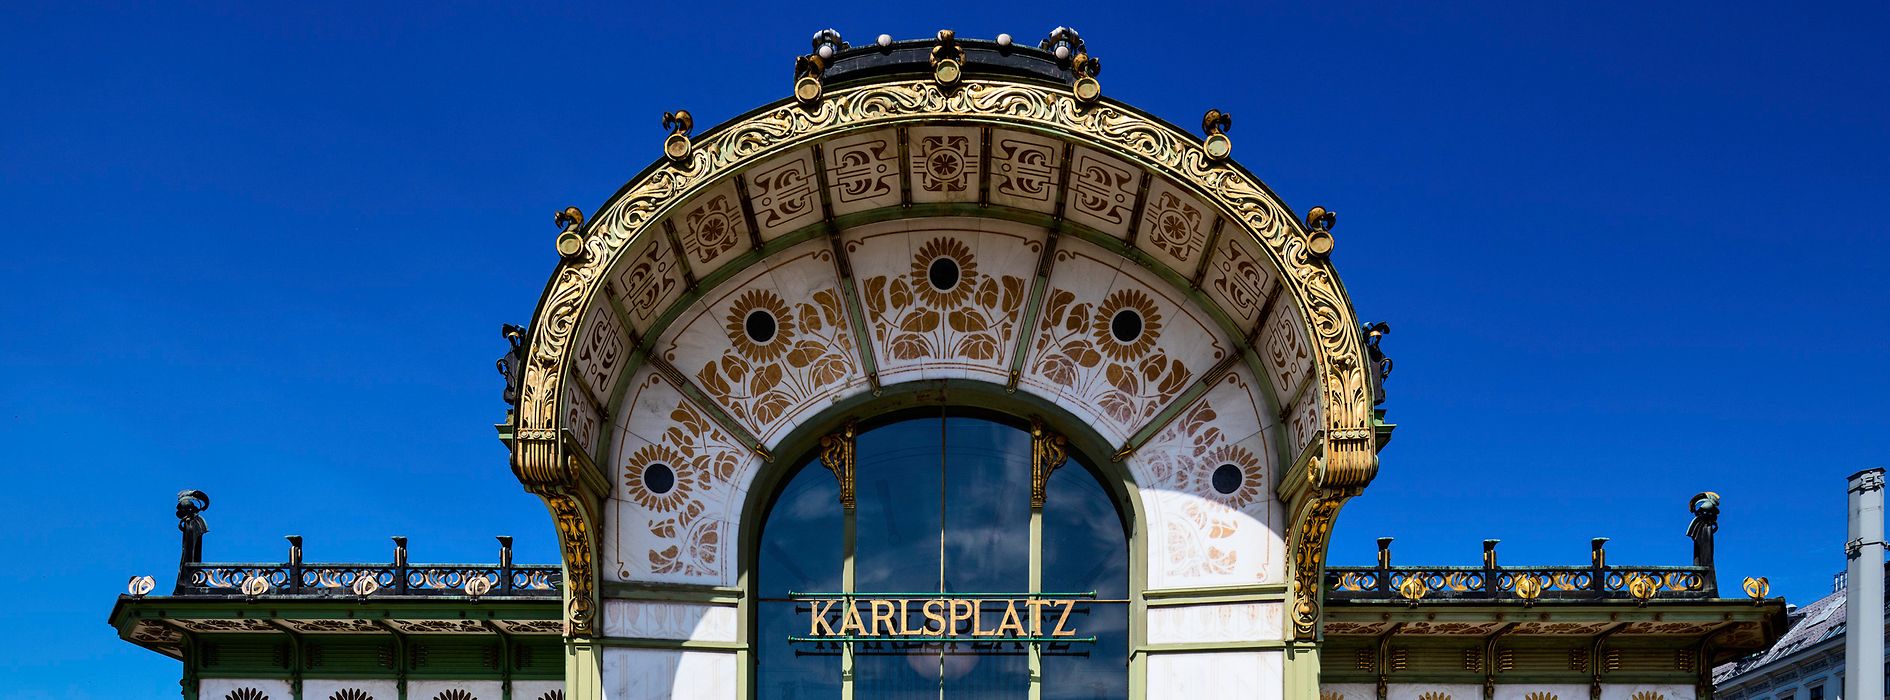 Padiglione Otto Wagner, Karlsplatz 